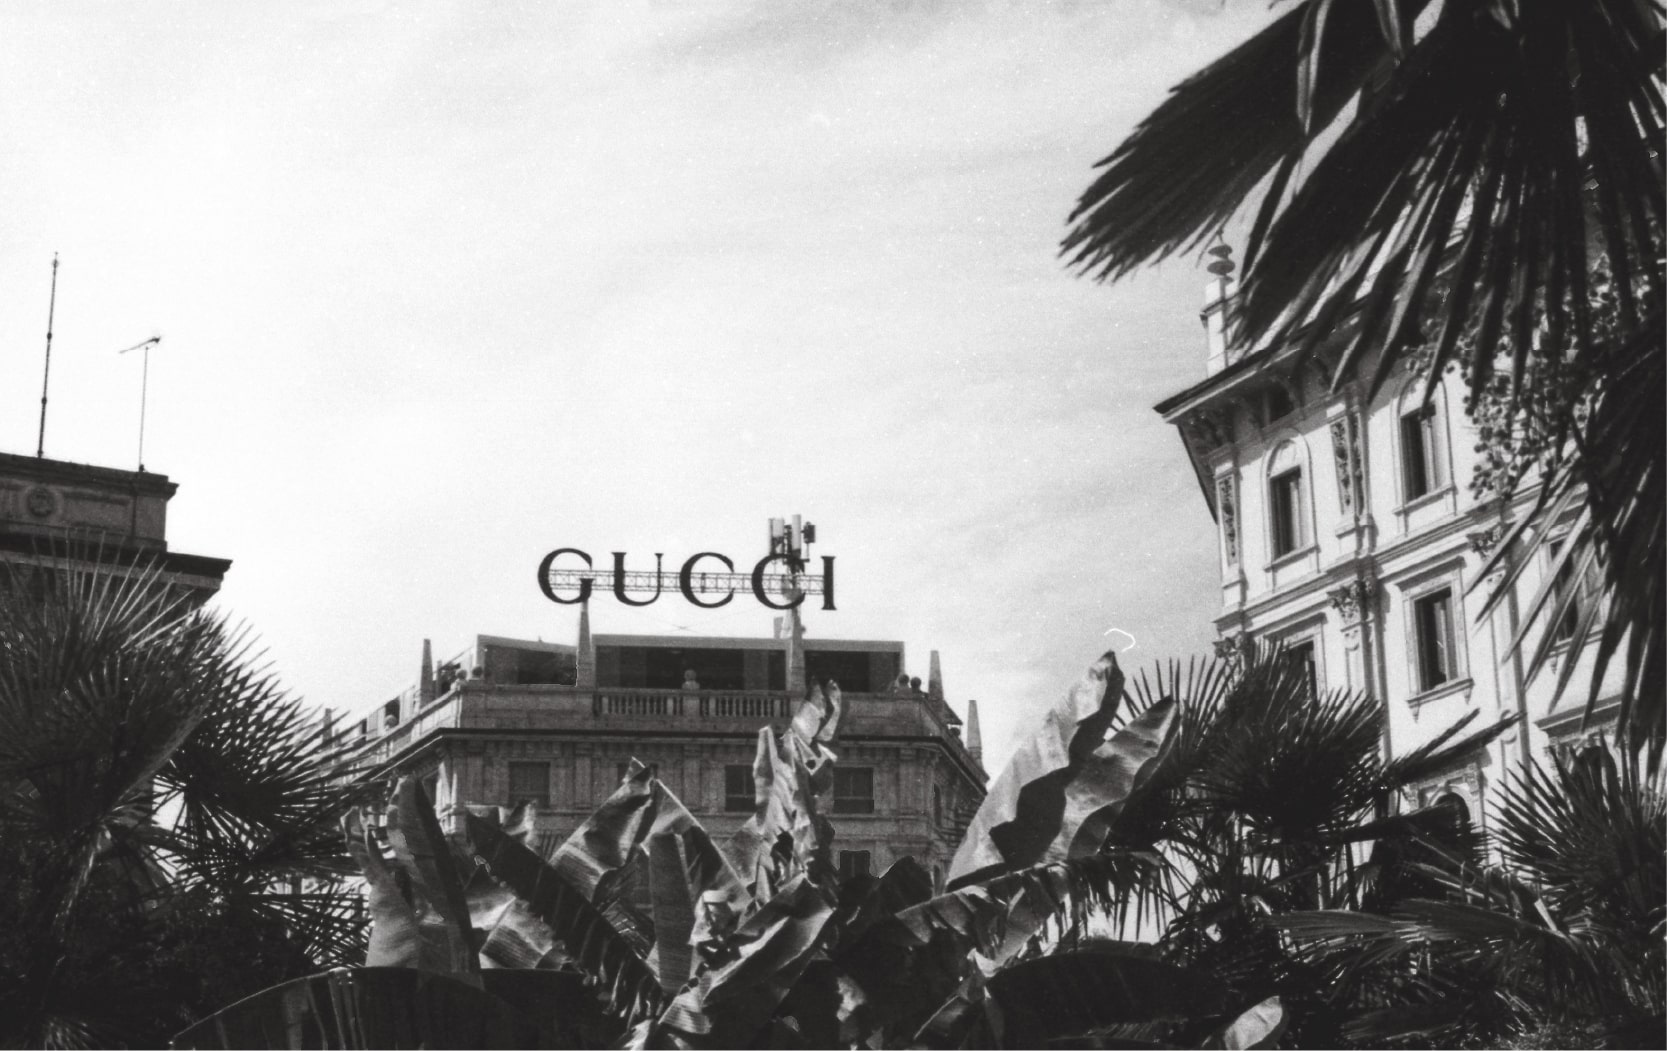 Fonds d'écran Gucci en 4K